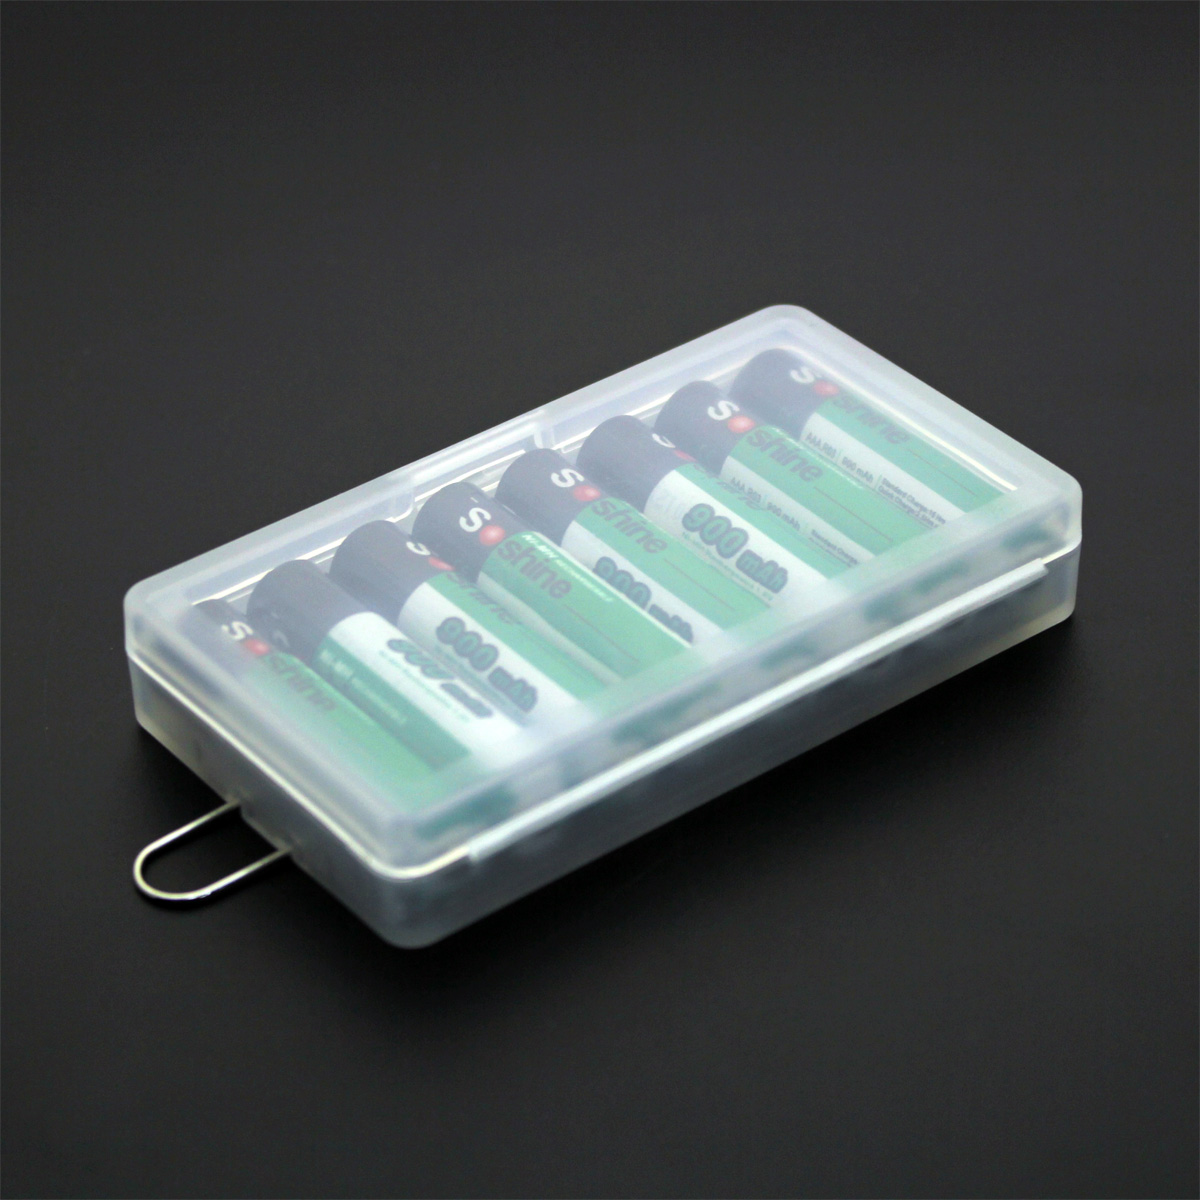 7号8节装AAA电池盒 专用7号电池收纳盒 高强度环保材料 收纳盒